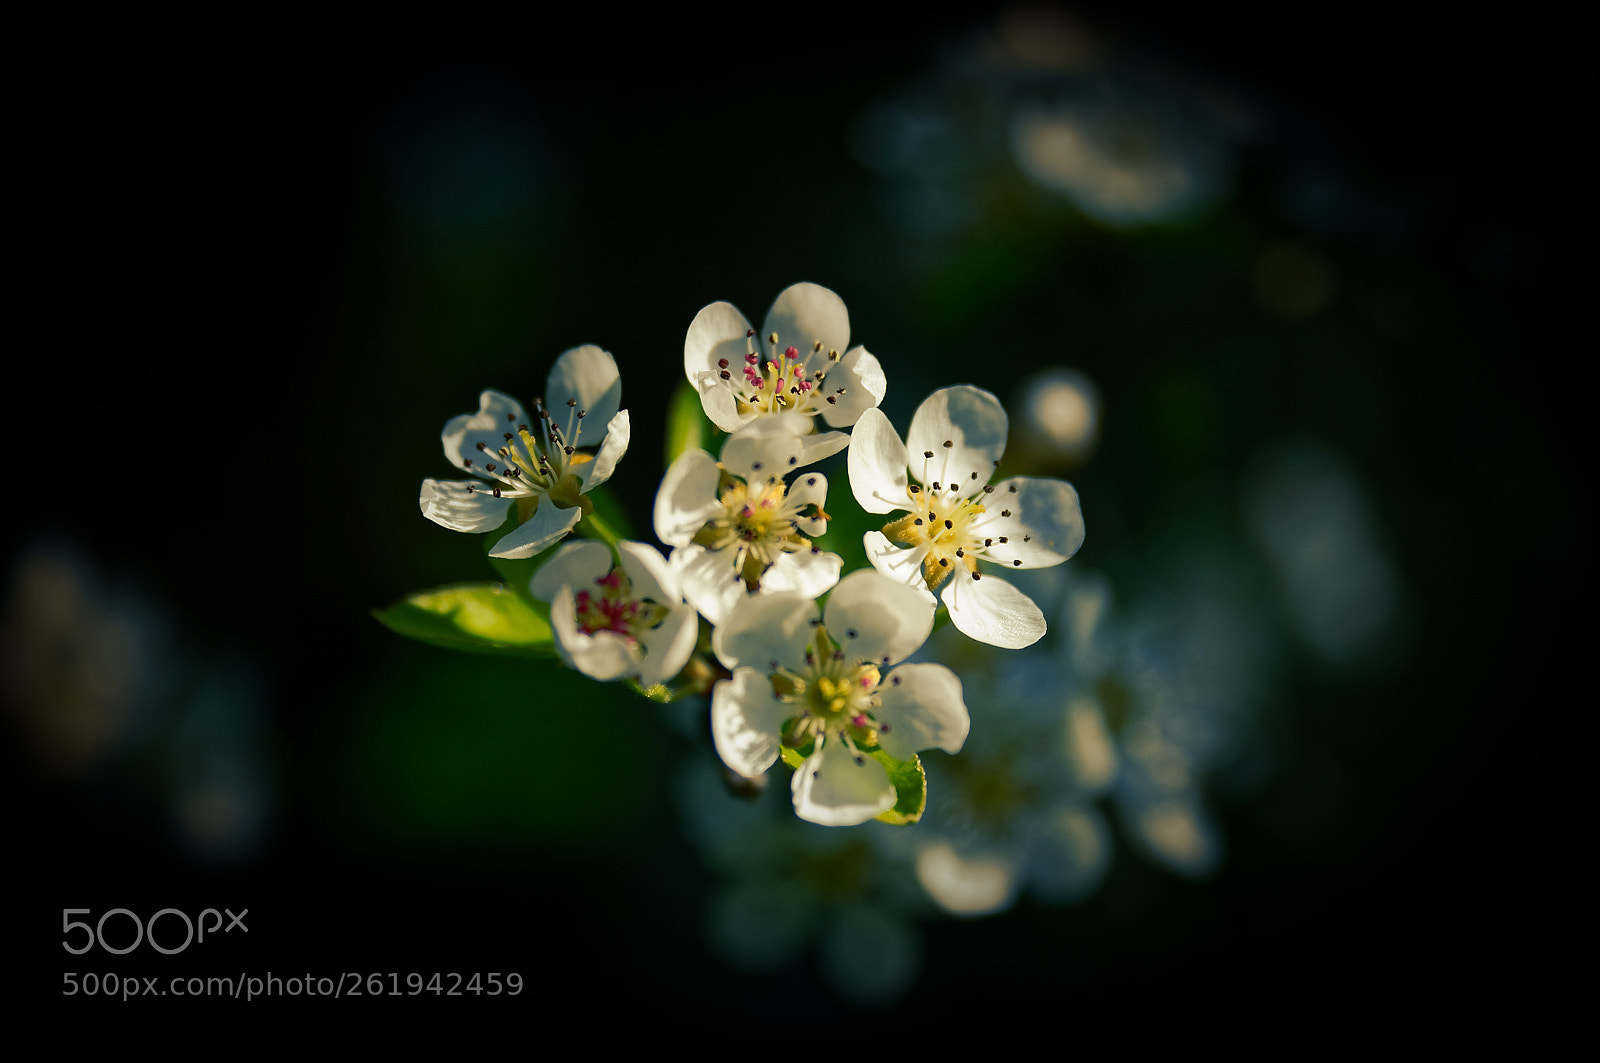 Nikon D700 sample photo. Fleurs de cerisier en photography